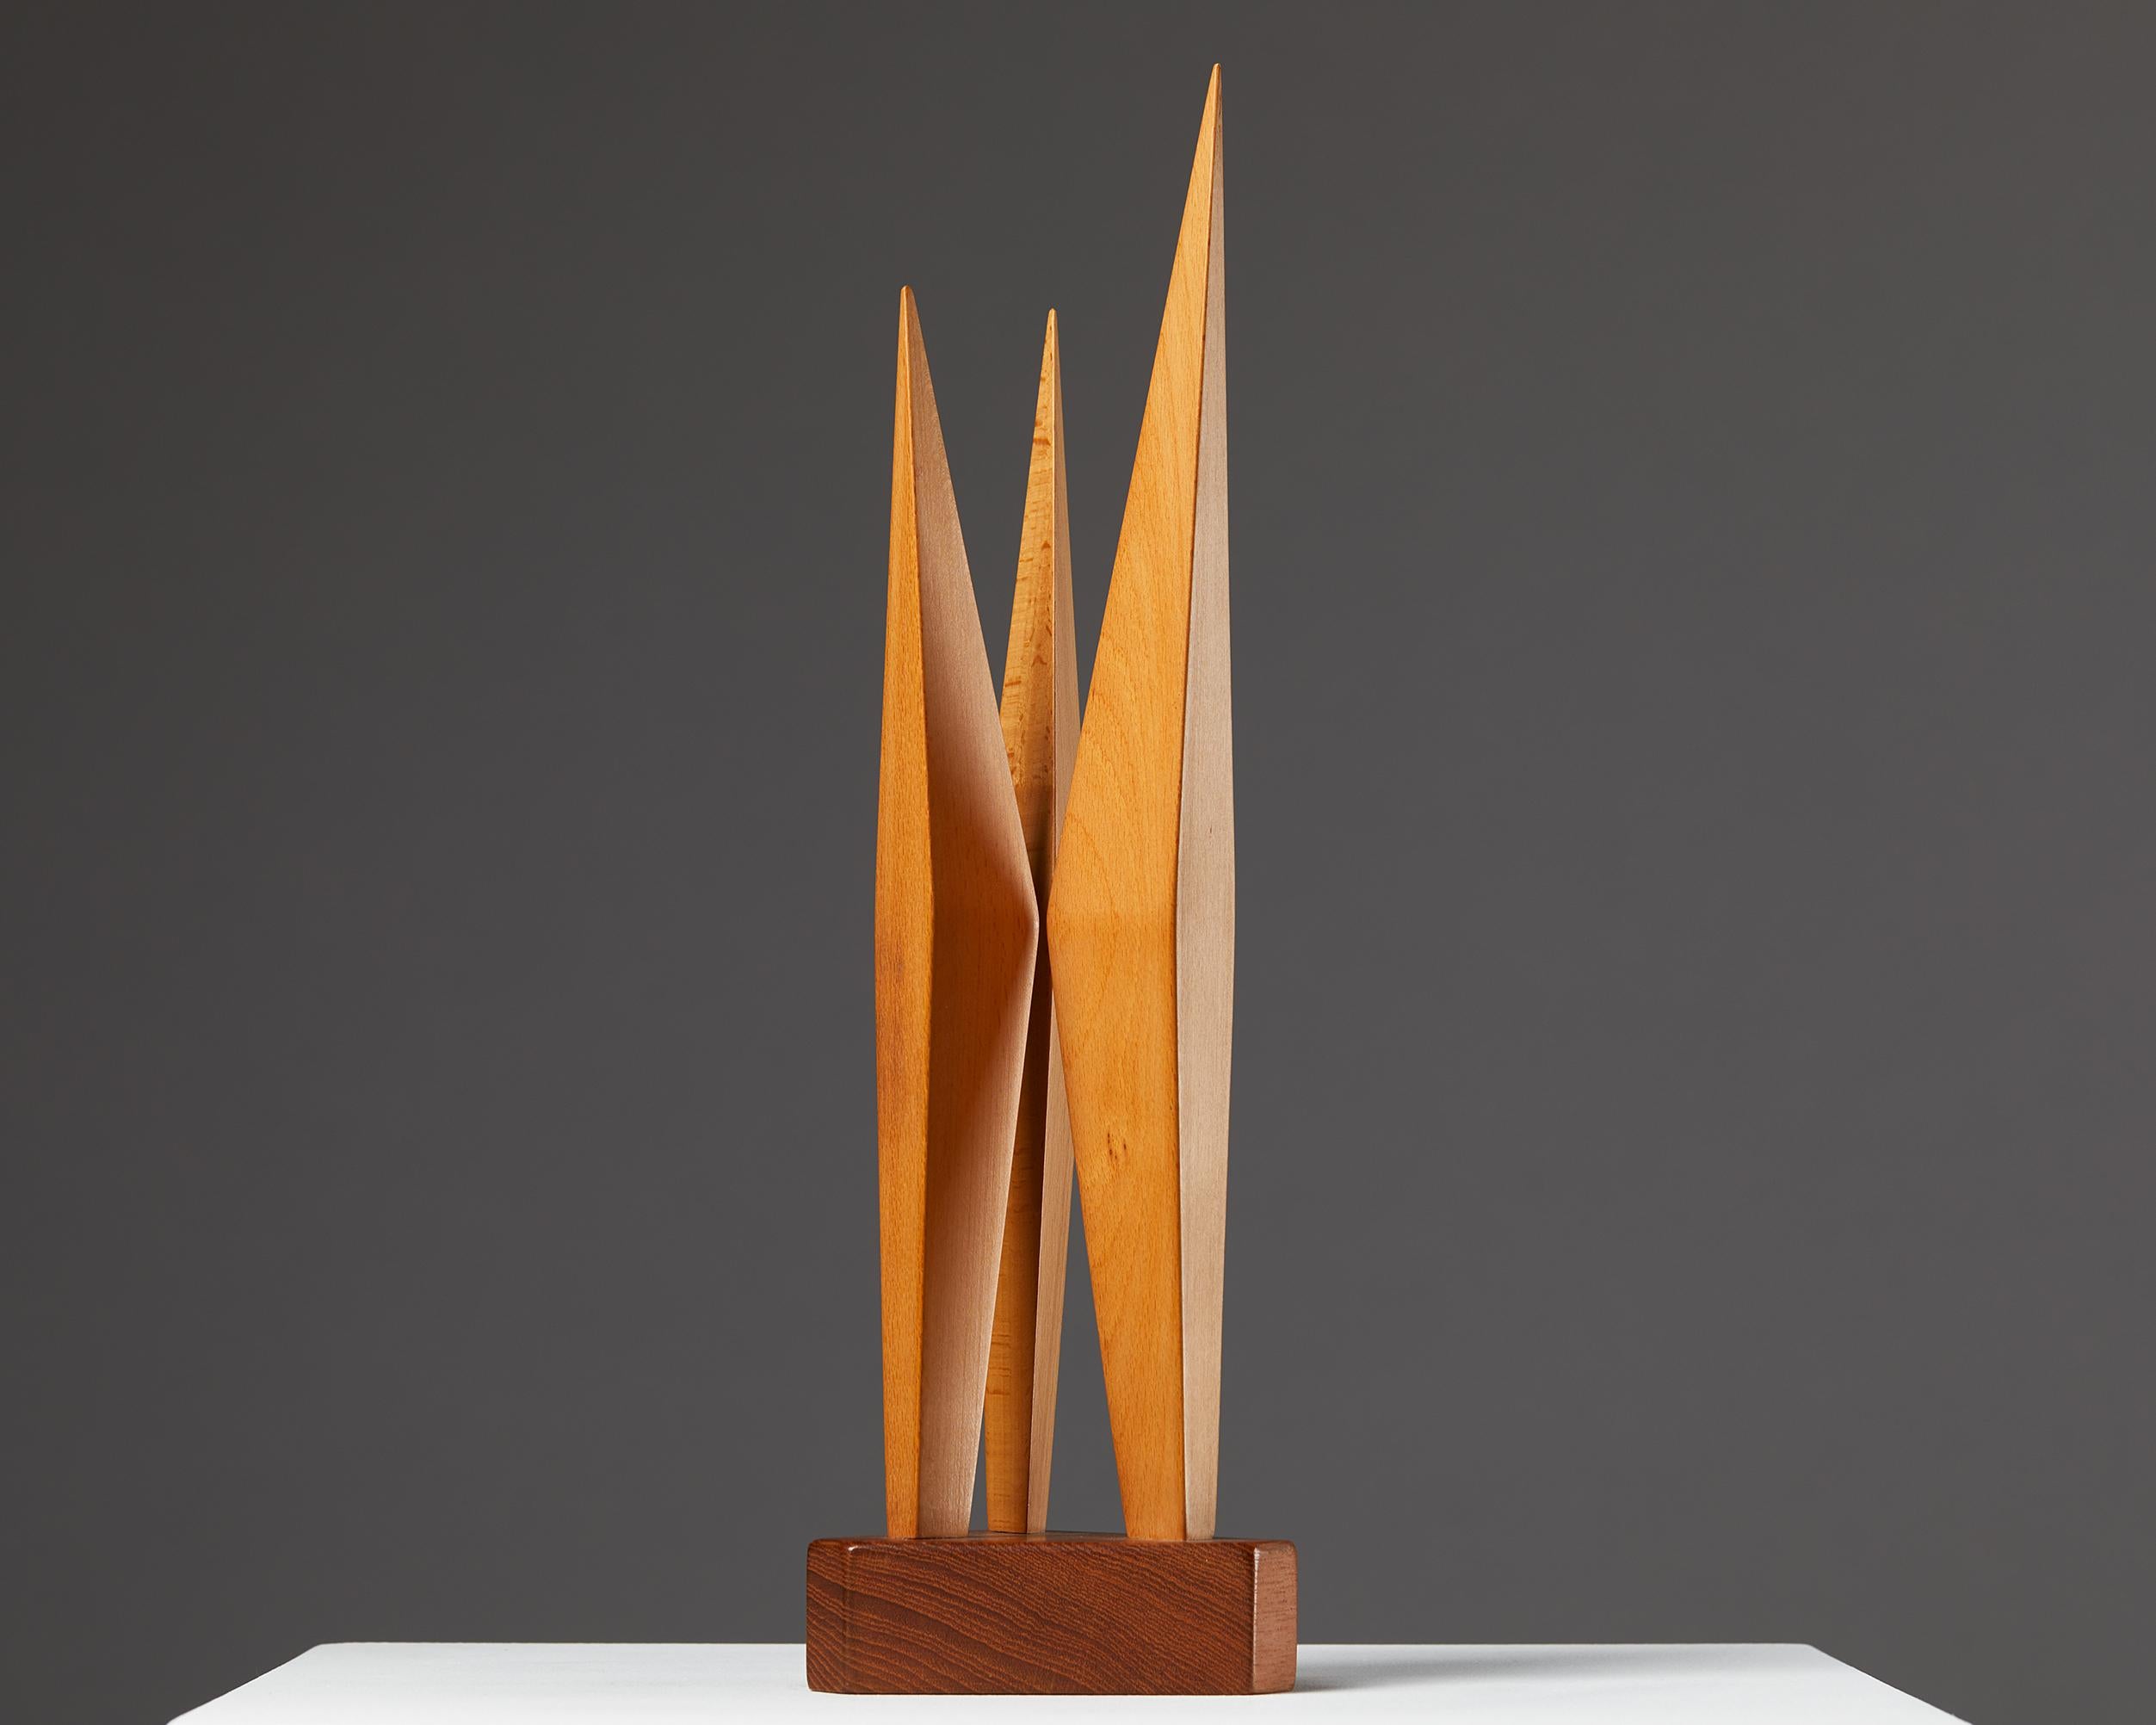 Sculpture de Johny Mattsson,
Danemark. 1950s.
Pine et teck.
Estampillé.
Mesures : H : 36,5 cm / 1' 2 1/2